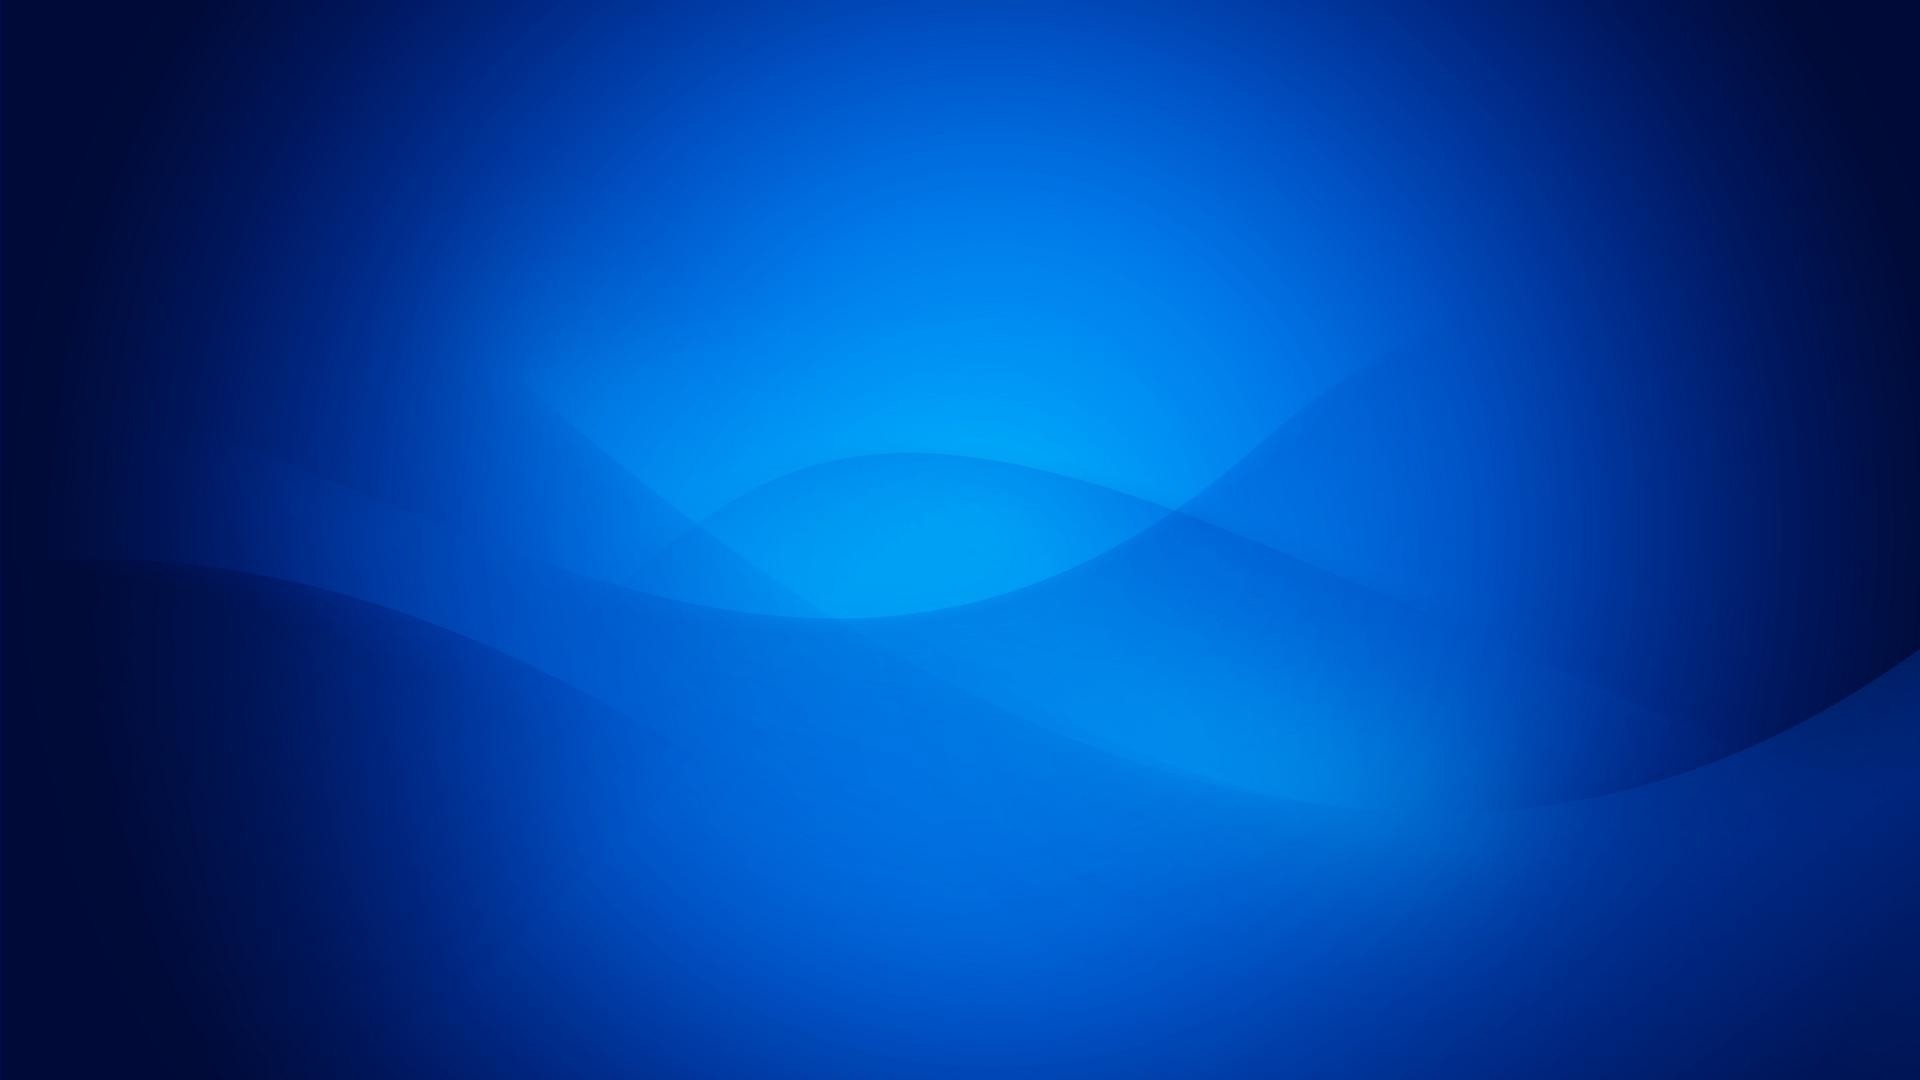 69+ Blue Desktop Backgrounds